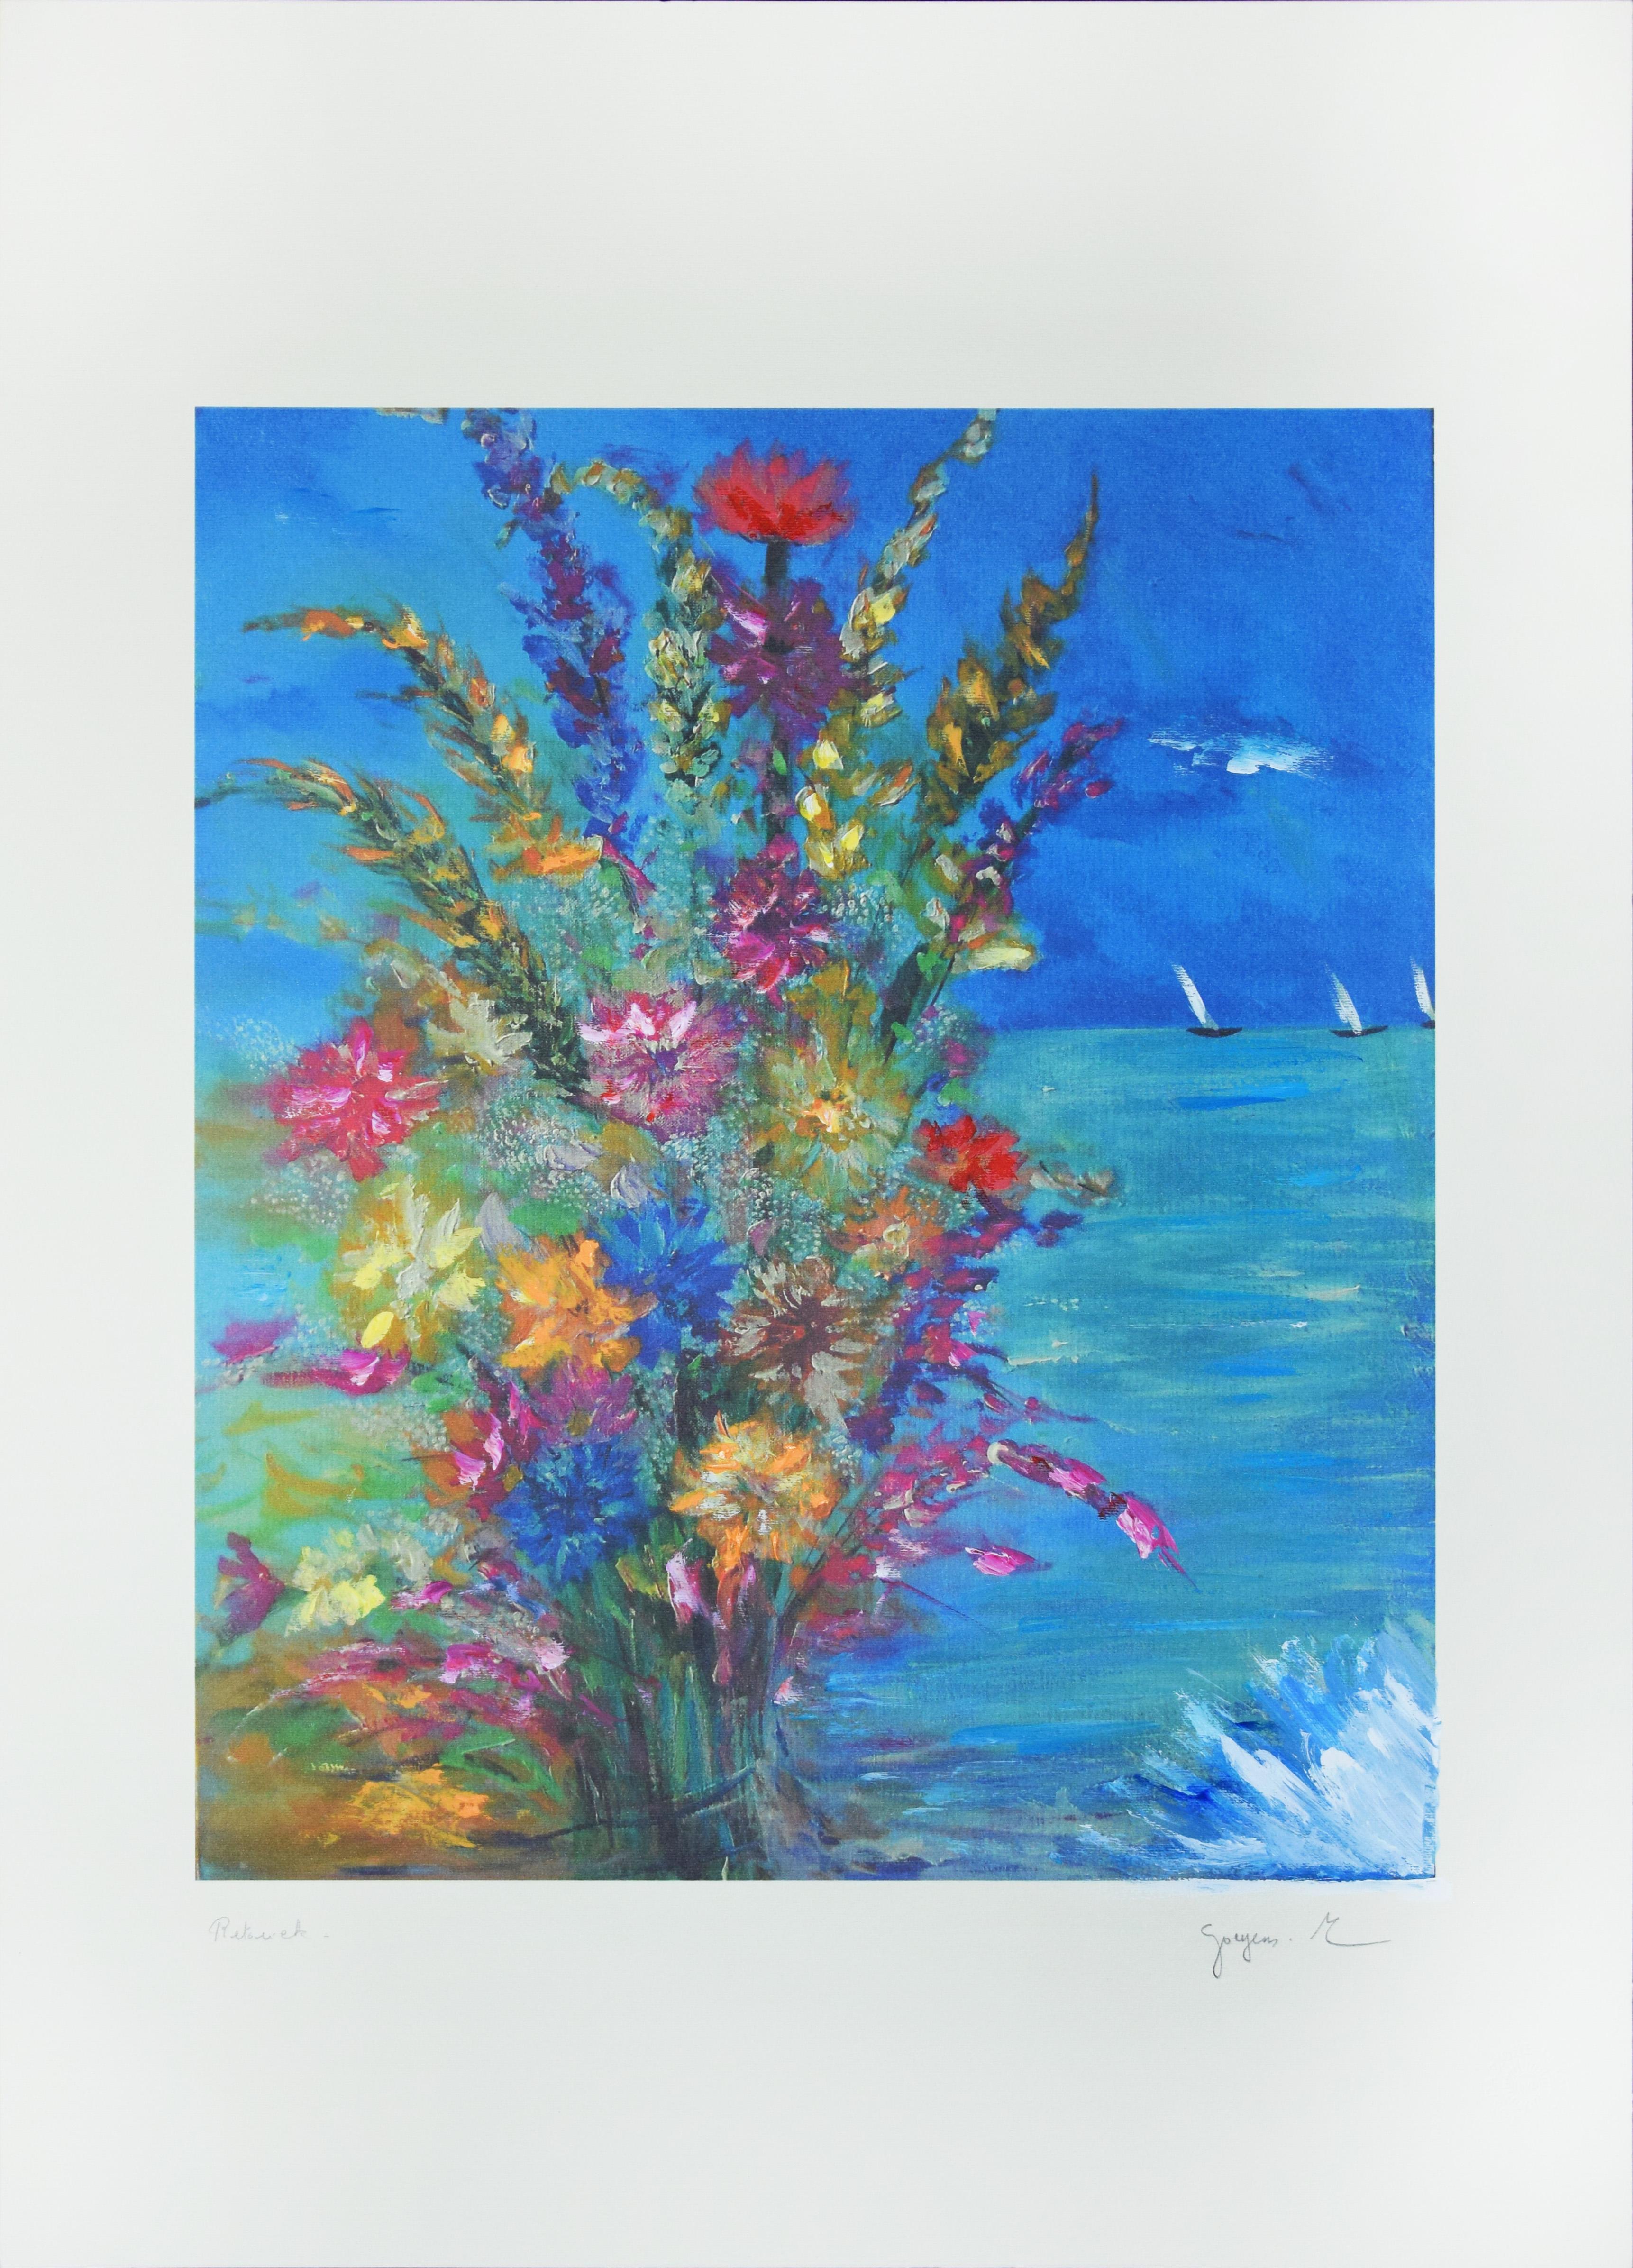 Flowers Of The Sea ist eine Original-Digigrafie, die von Martine Goeyens in den 2000er Jahren realisiert wurde.
Das Kunstwerk ist vom Künstler rechts unten mit Bleistift handsigniert. Handretusche des Künstlers am linken unteren Rand. Prägestempel